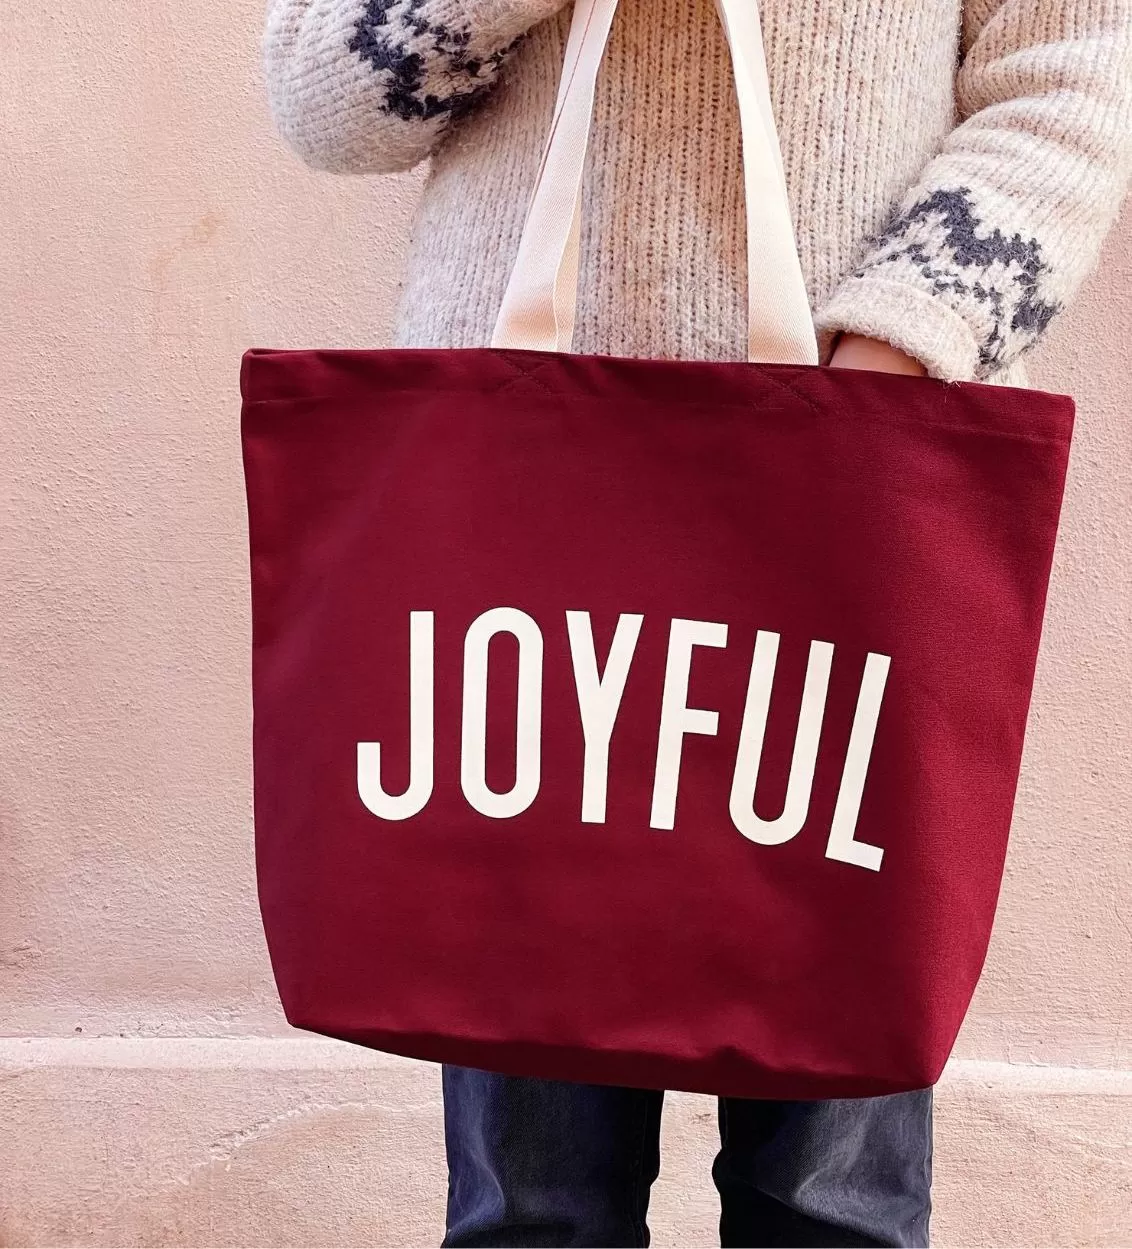 Joyful Alphabet Bags for a joyful Christmas